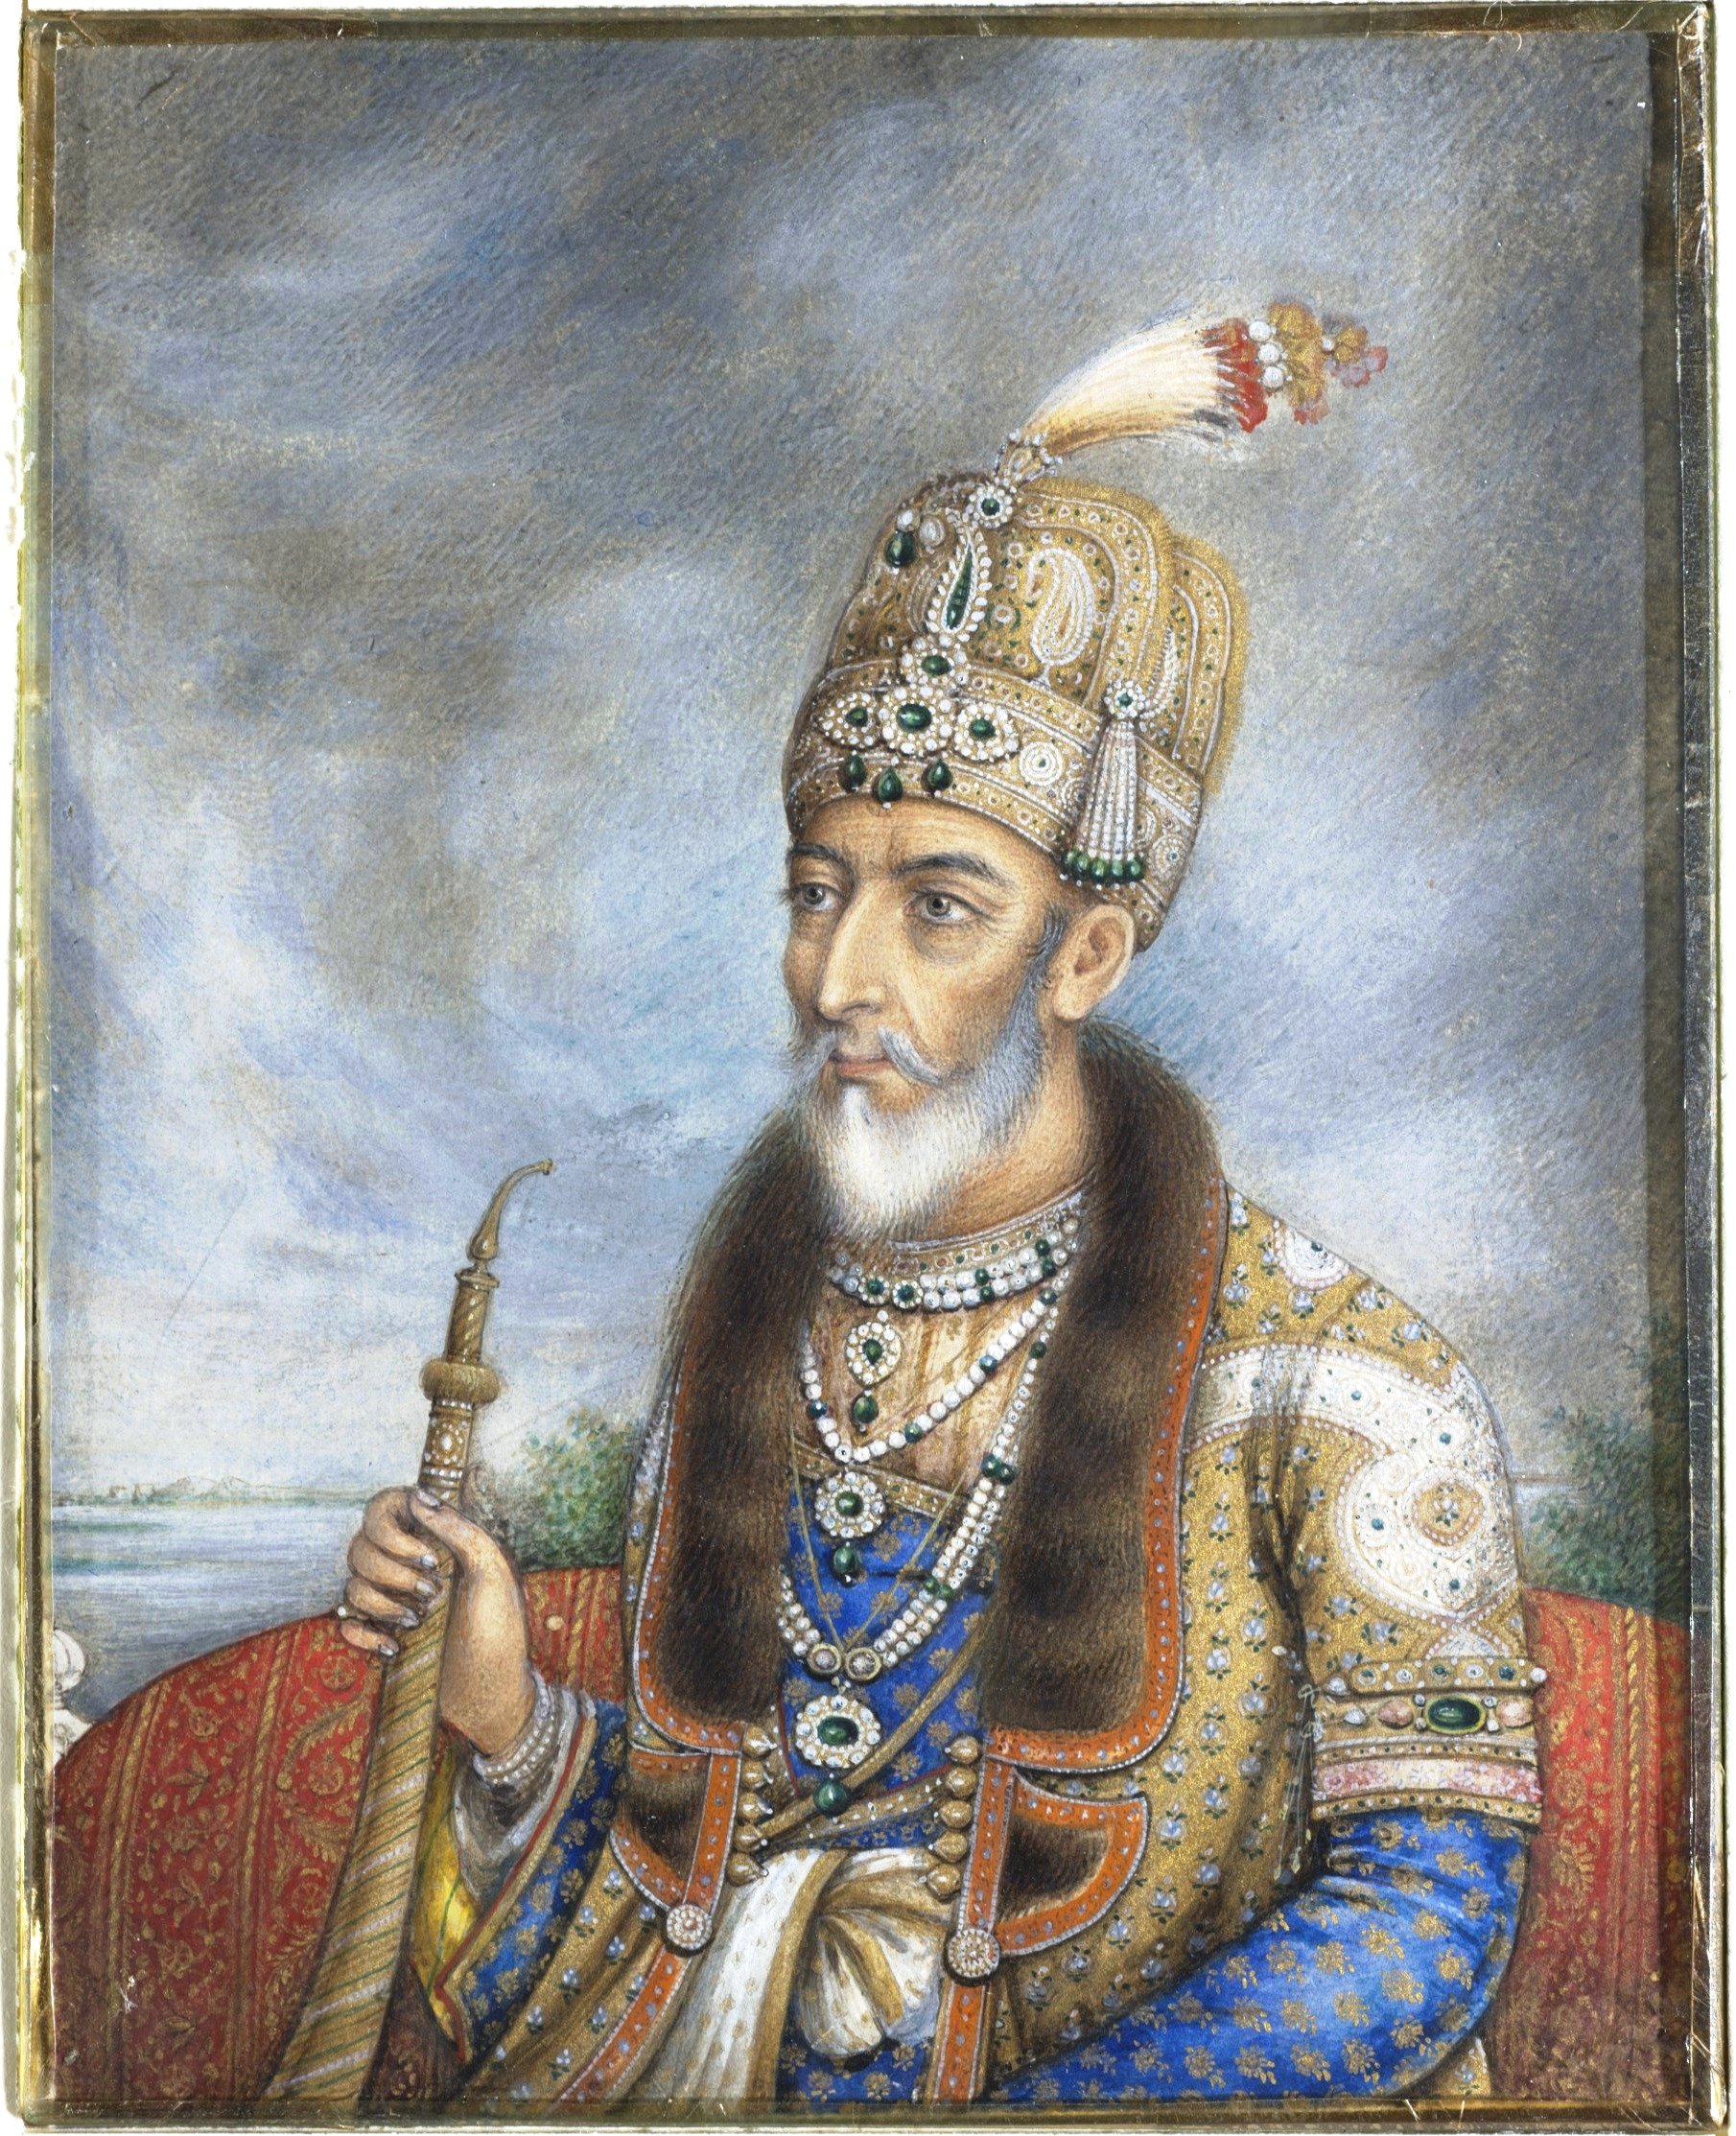 Bahadur Shah II of India जाने उस मुगल बादशाह के बारे में जिसकी मां थी हिन्दू और आज के दिन उसने किया था आत्मसमर्पण